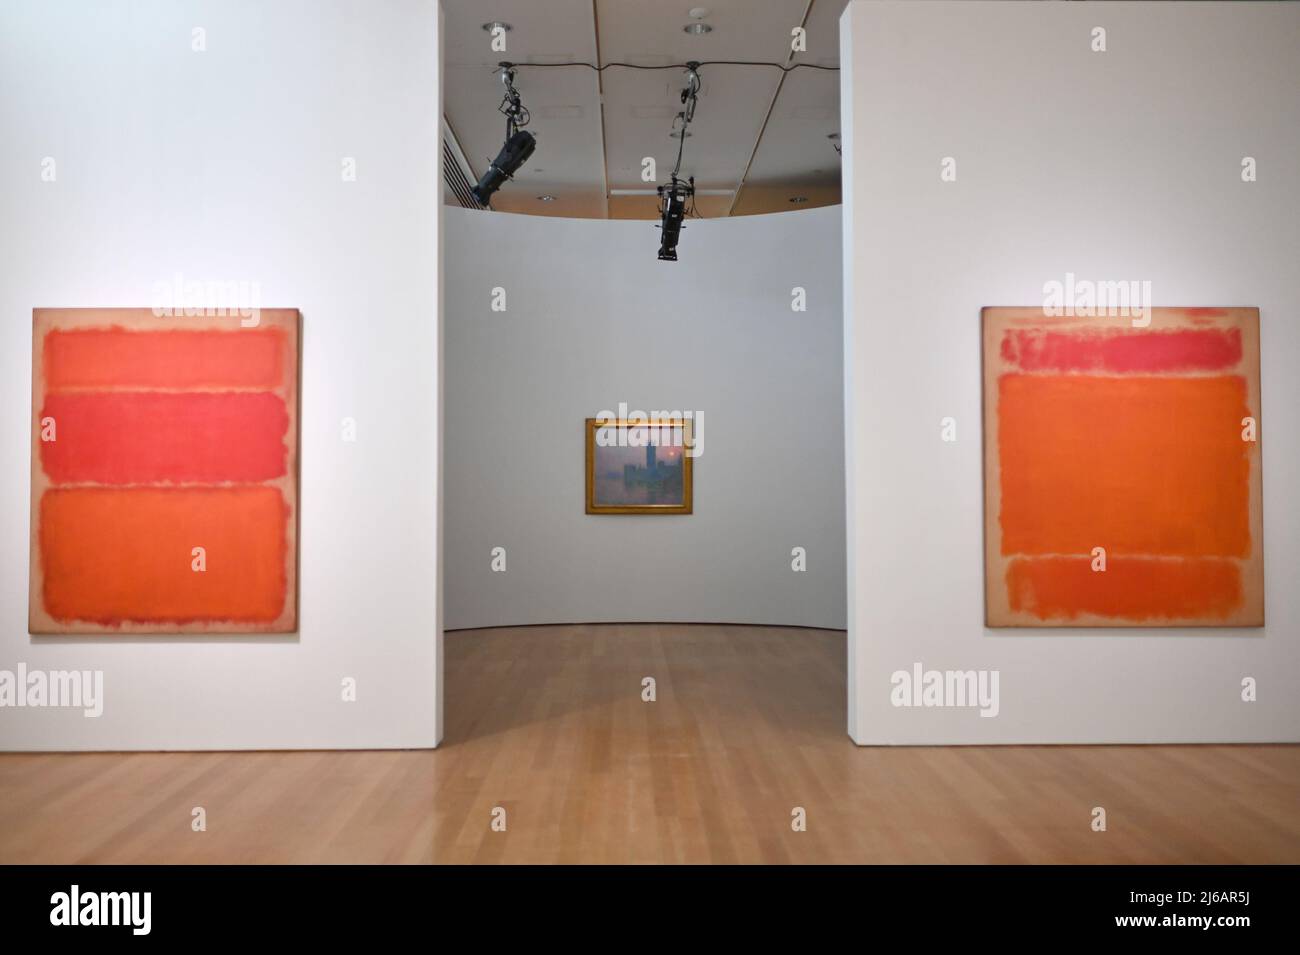 El título de pintura de Claude Monet (1840-1926) “Le Parlement, soleil couchant” se ve entre dos pinturas de Mark Rothko expuestas durante la presentación preliminar de Christie en 20th y 21st Century Art Press Preview, Nueva York, NY, 29 de abril de 2022. (Foto de Anthony Behar/Sipa USA) Foto de stock